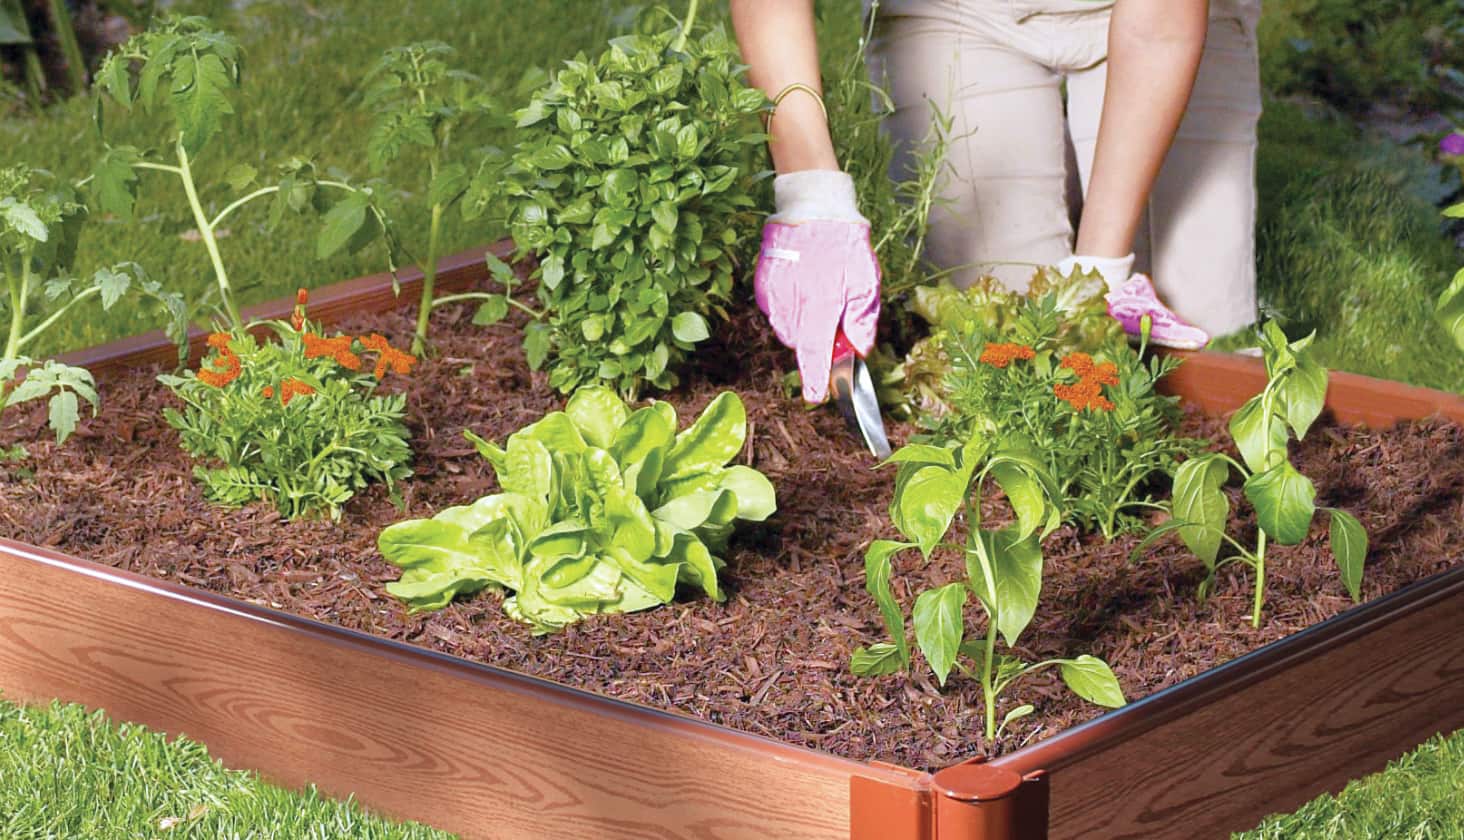 Une personne s’adonnant au jardinage dans une petite boîte de plantes et de terre